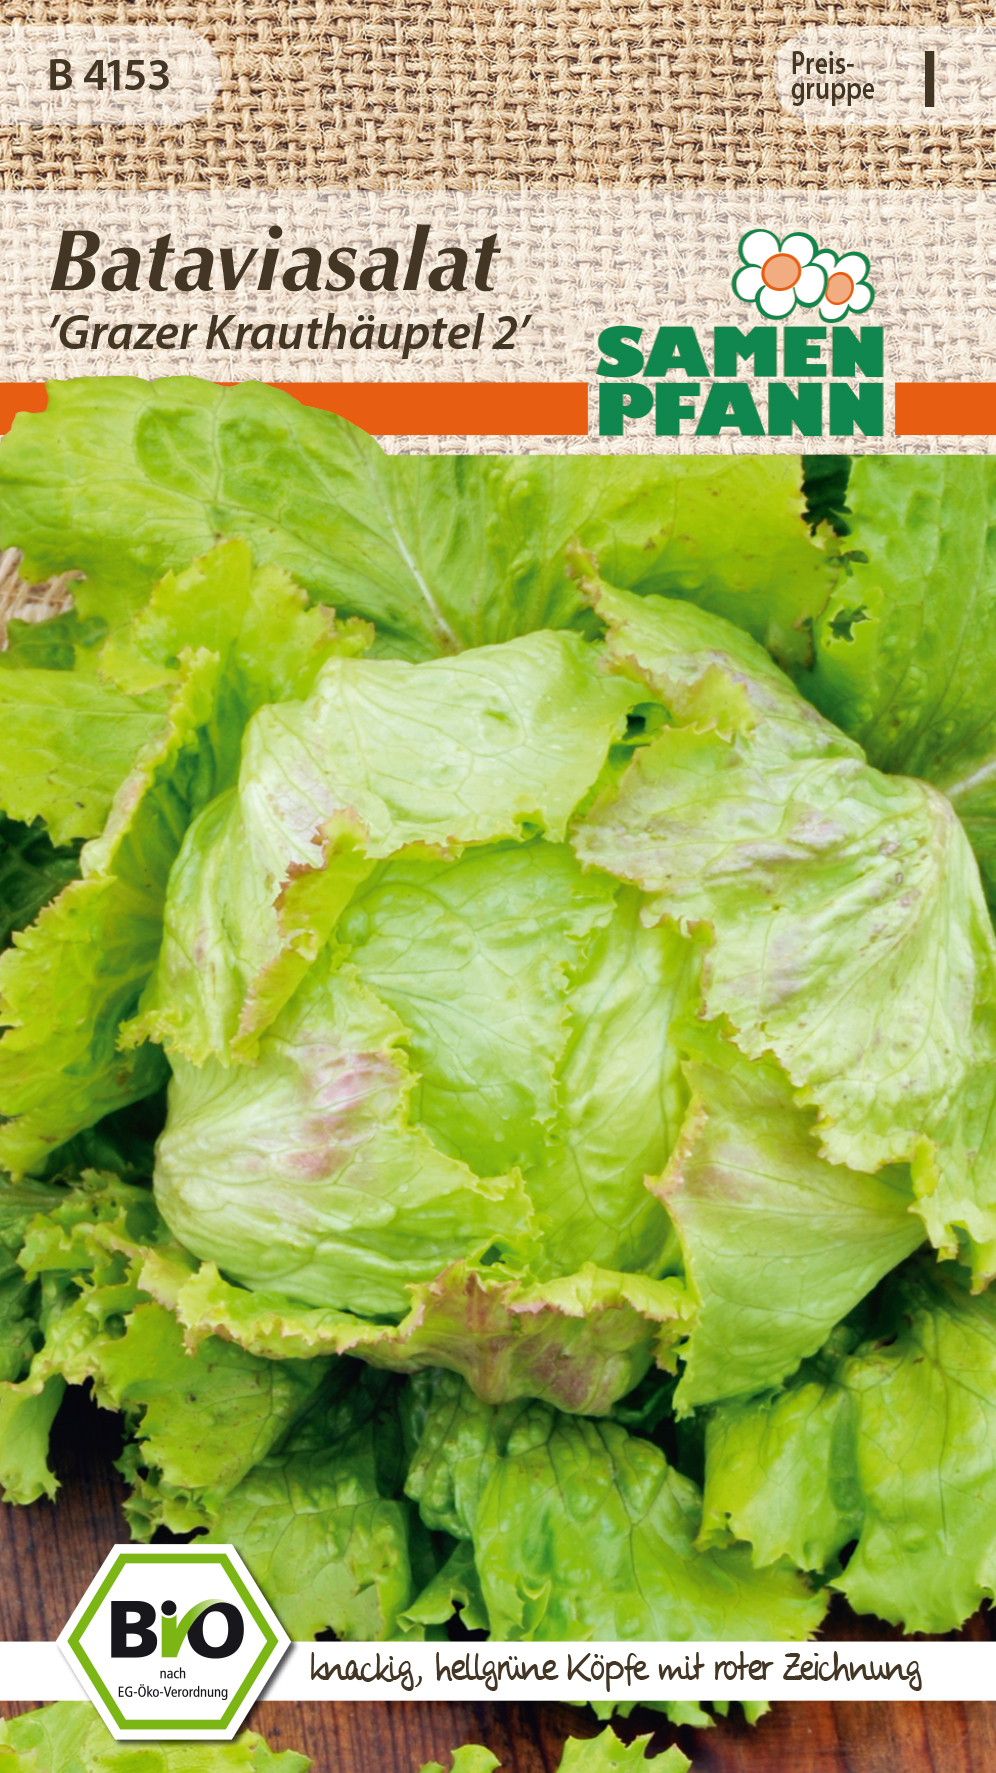 Batavia lettuce organic Grazer Krauthauptel2 approx 100 seeds seeds Pfann